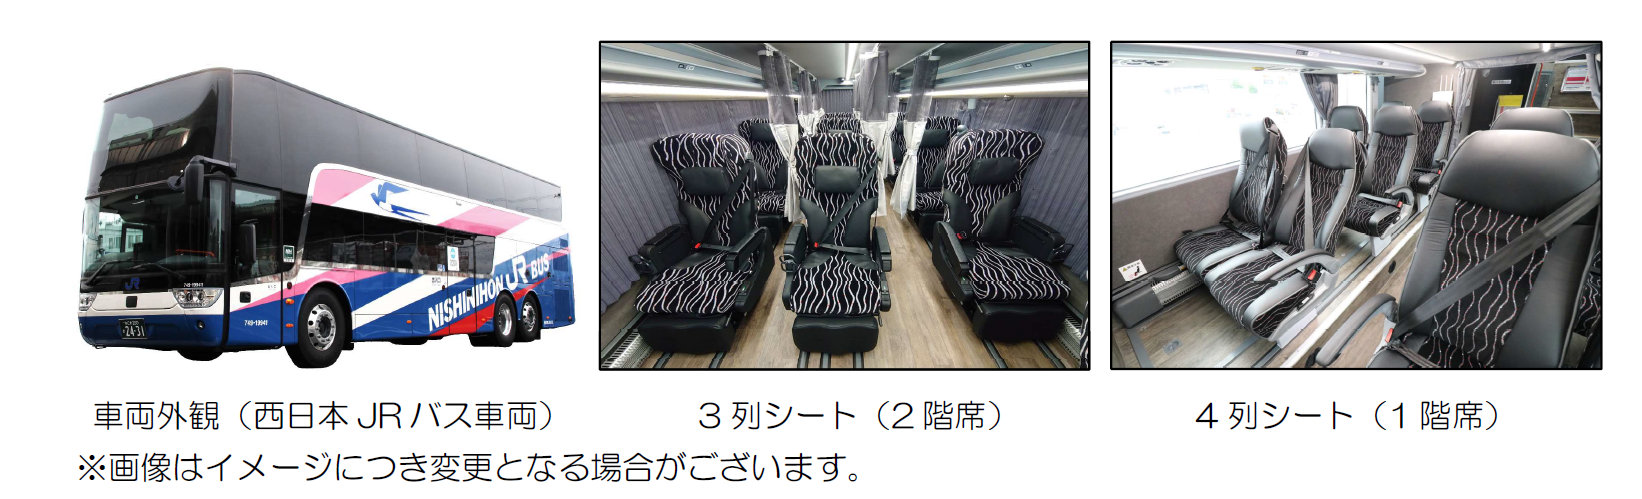 新型２階建て車両 3列シート】京阪神～東京線 ドリーム号 と 昼特急 に